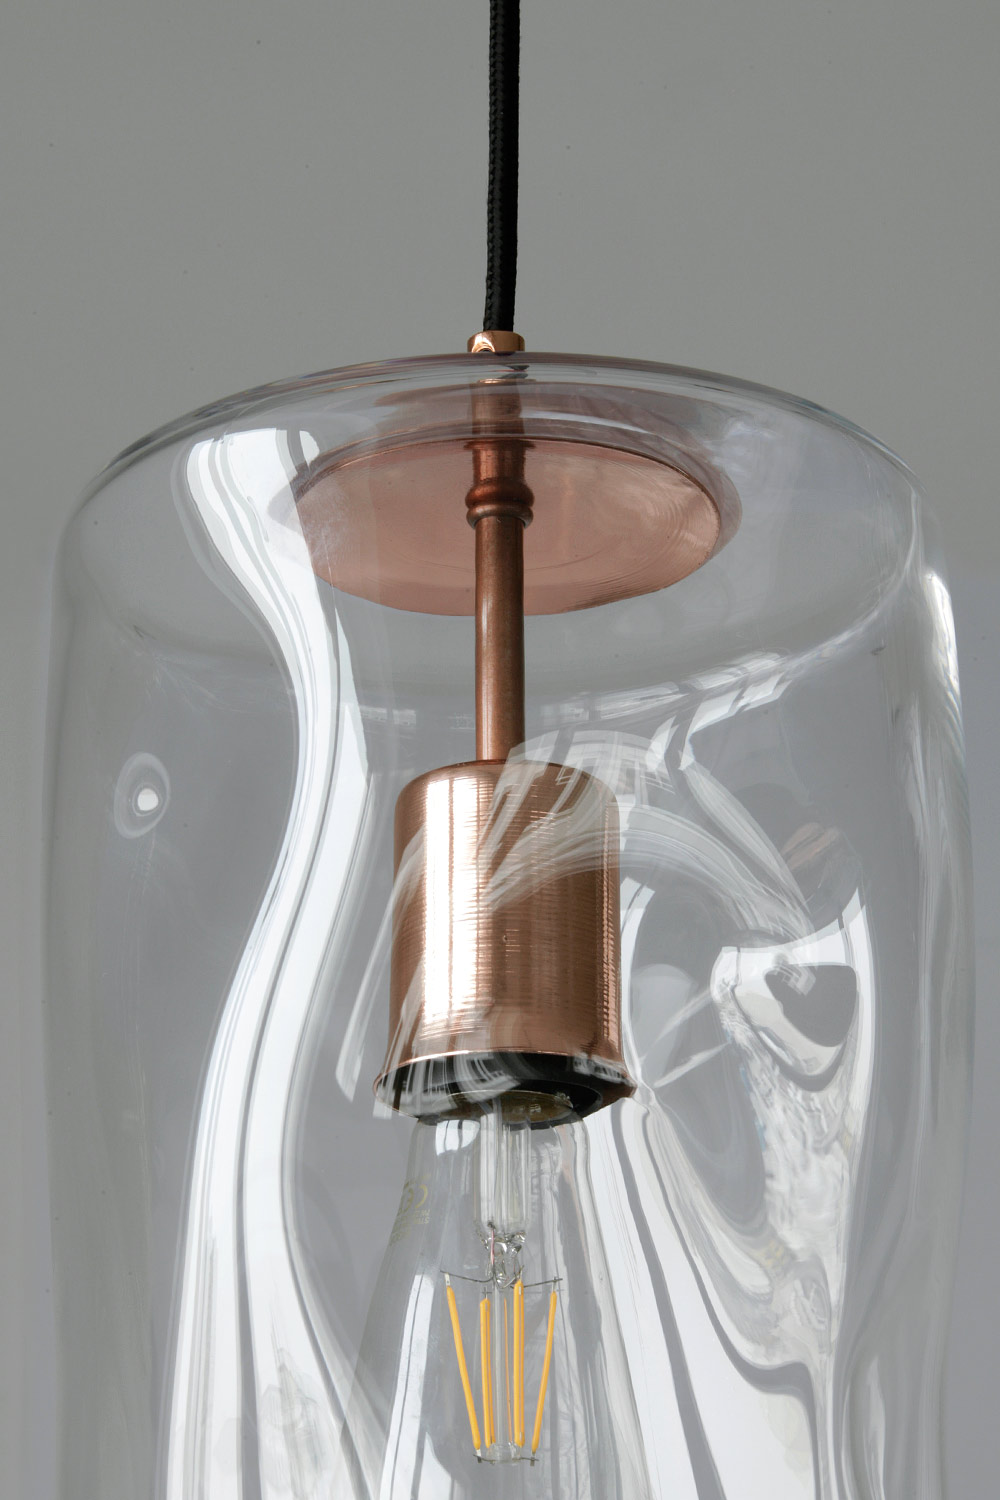 Unregelmäßige Glaszylinder-Hängeleuchte in verschiedenen Farben: Kupfer